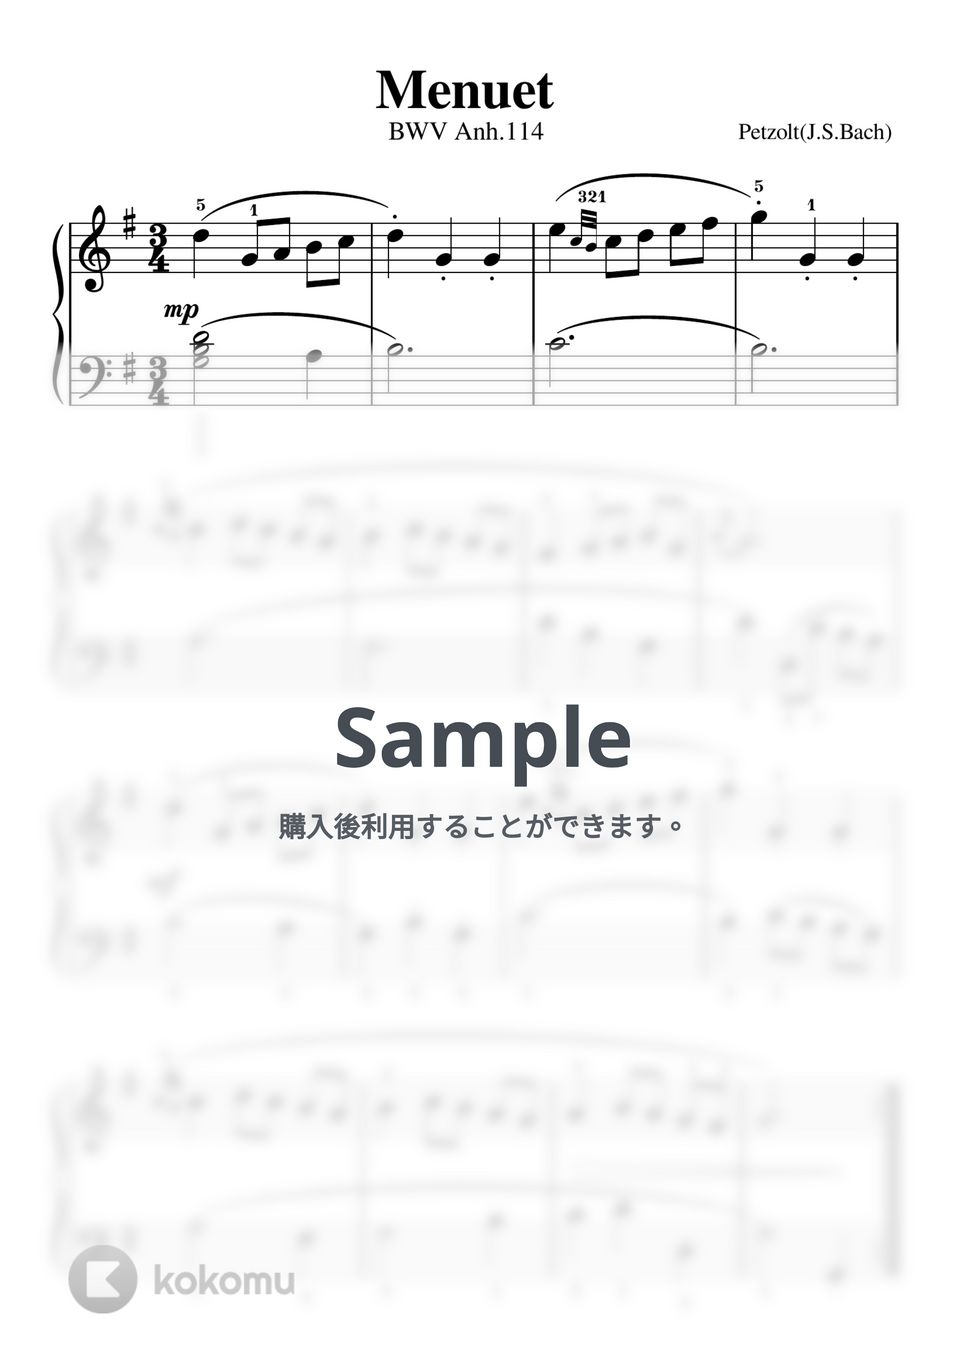 バッハ - メヌエット ト長調(ペッツオールト/バッハ)BWV Anh.114 by ピアノの先生の楽譜集